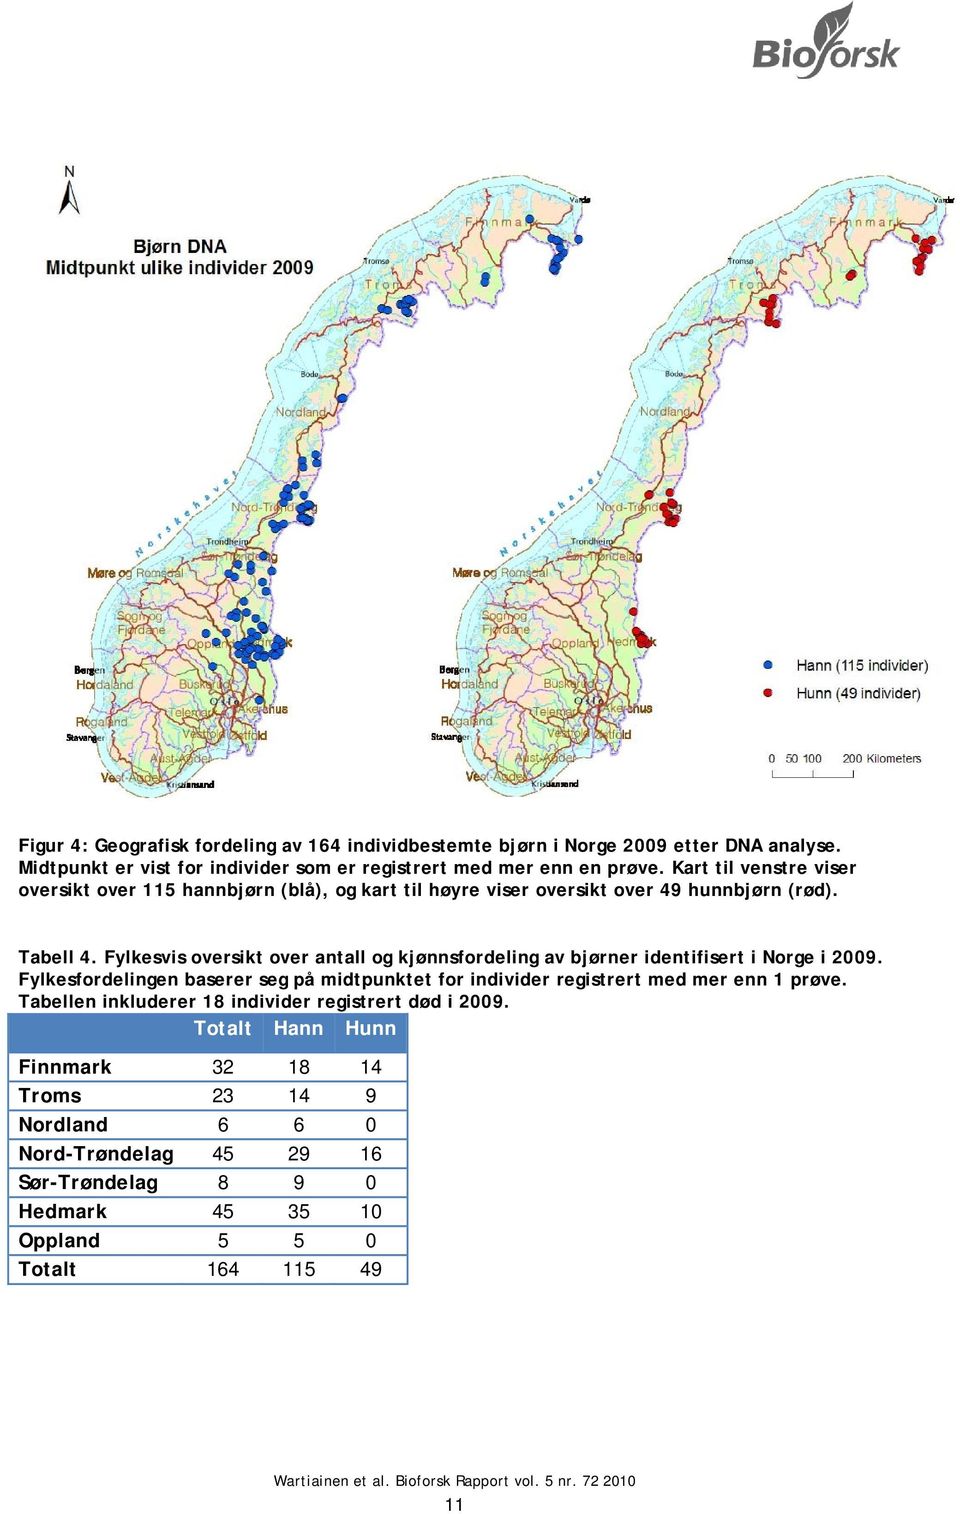 Fylkesvis oversikt over antall og kjønnsfordeling av bjørner identifisert i Norge i 2009.